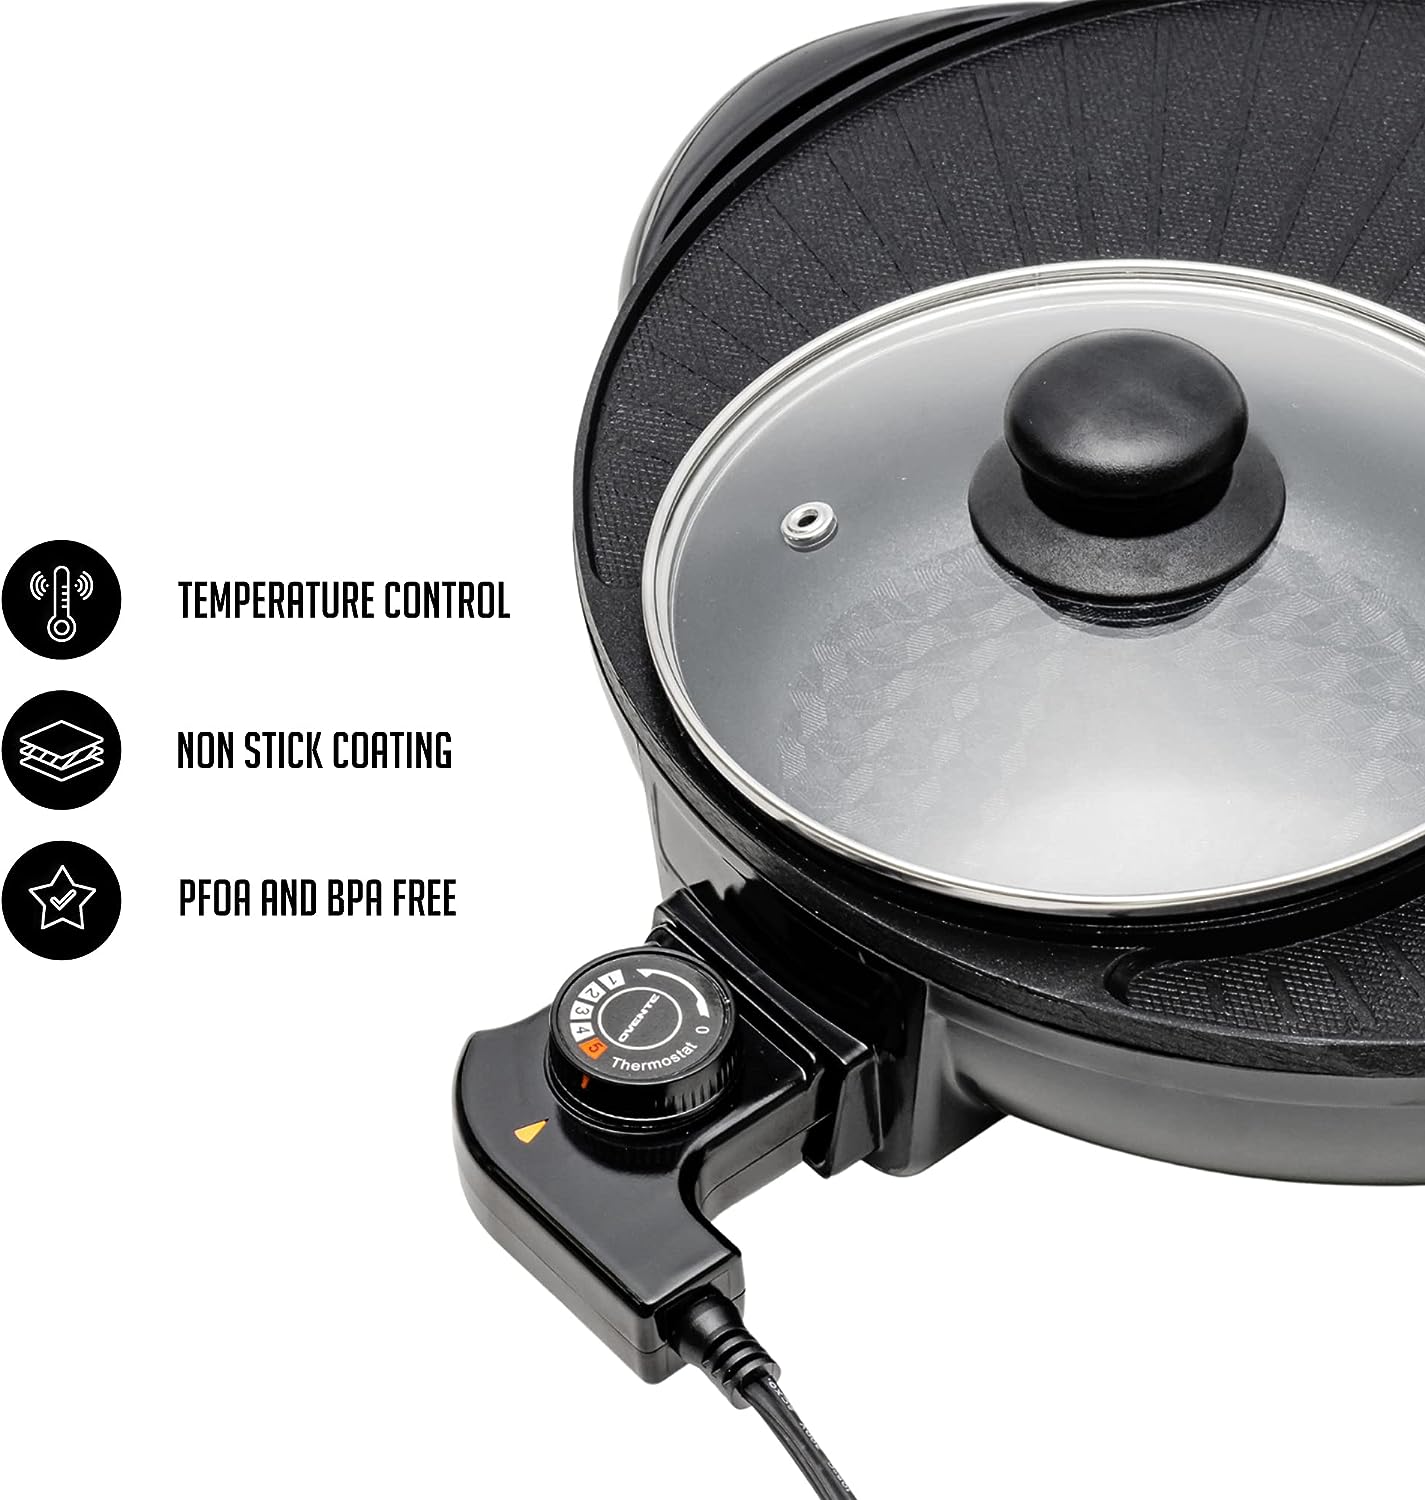 Ovente Multi-Purpose Electric Hotpot Grill – R & B Import